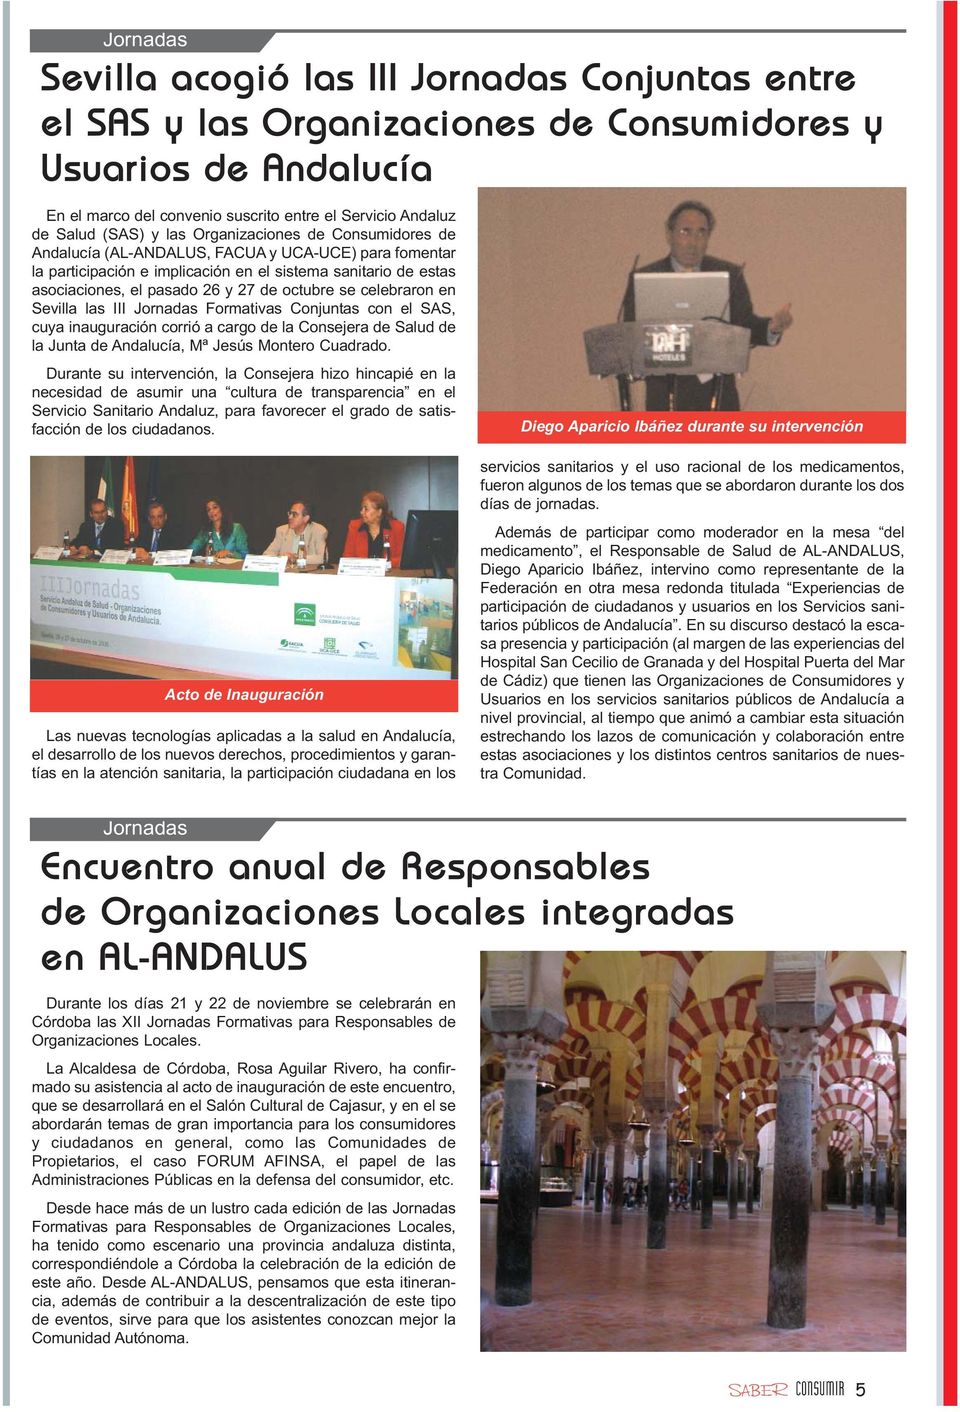 octubre se celebraron en Sevilla las III Jornadas Formativas Conjuntas con el SAS, cuya inauguración corrió a cargo de la Consejera de Salud de la Junta de Andalucía, Mª Jesús Montero Cuadrado.